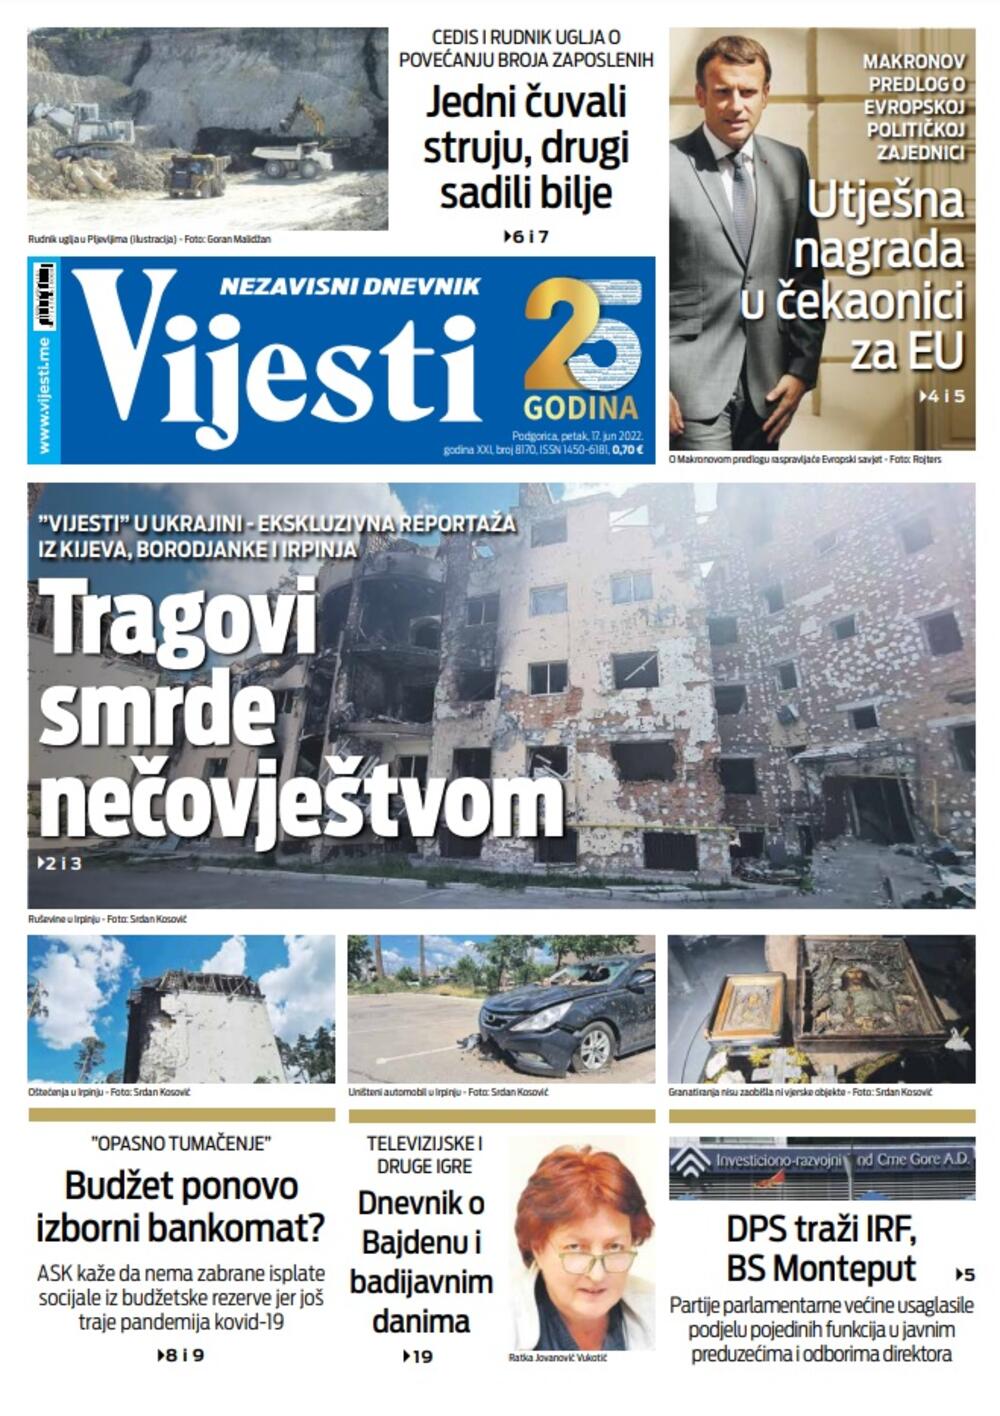 Naslovna strana "Vijesti" za petak 17. jun, Foto: Vijesti